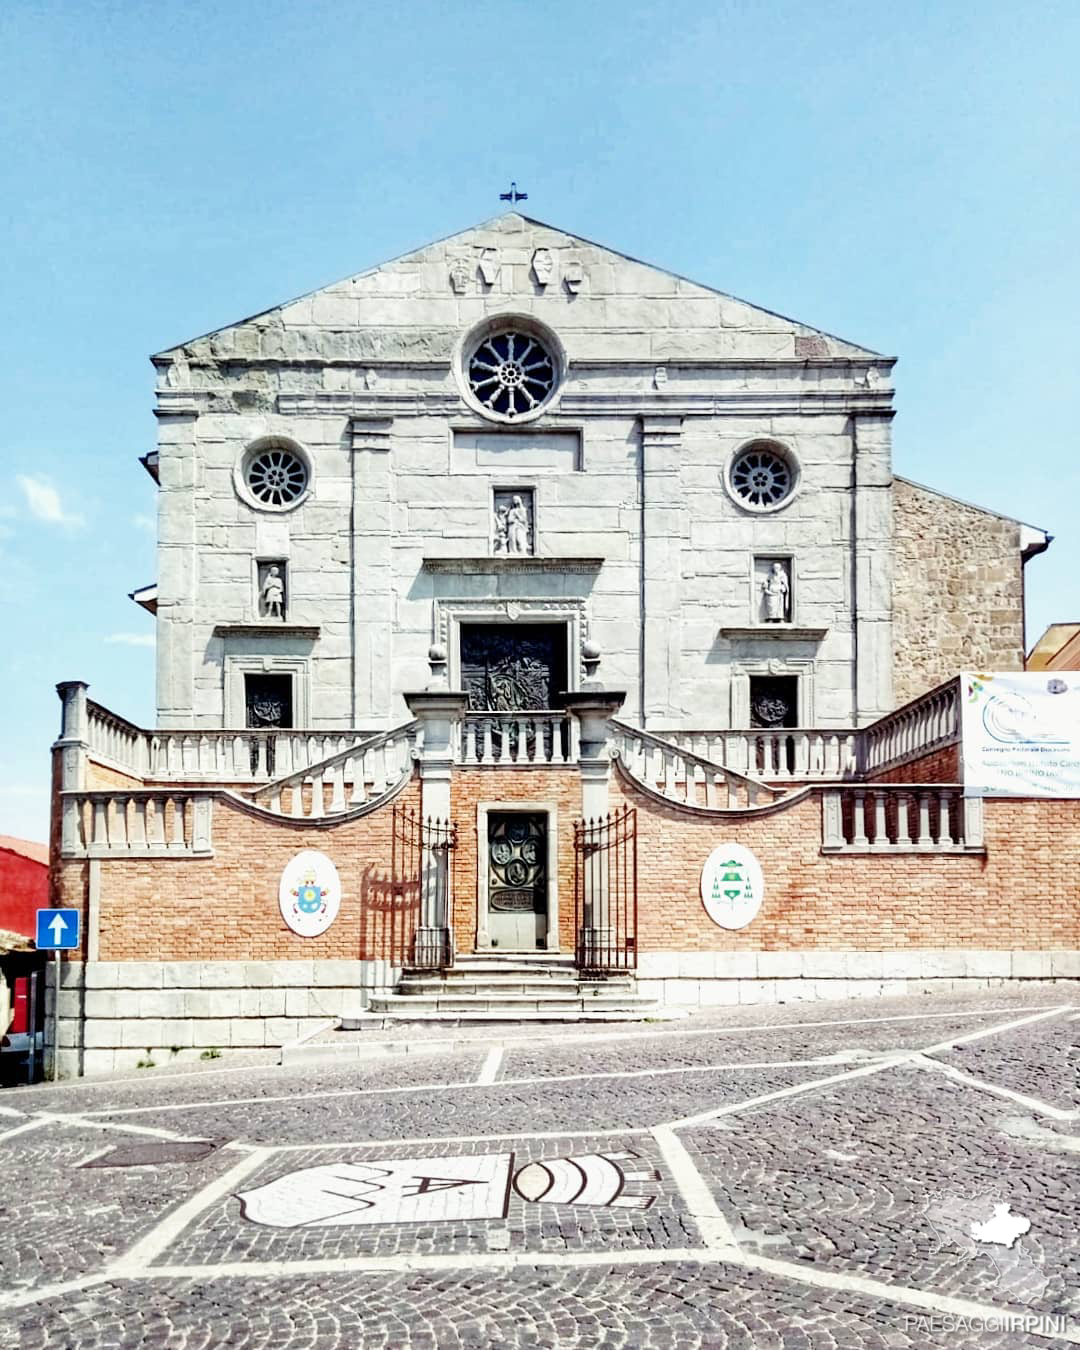 Ariano Irpino - Cattedrale della Vergine Assunta